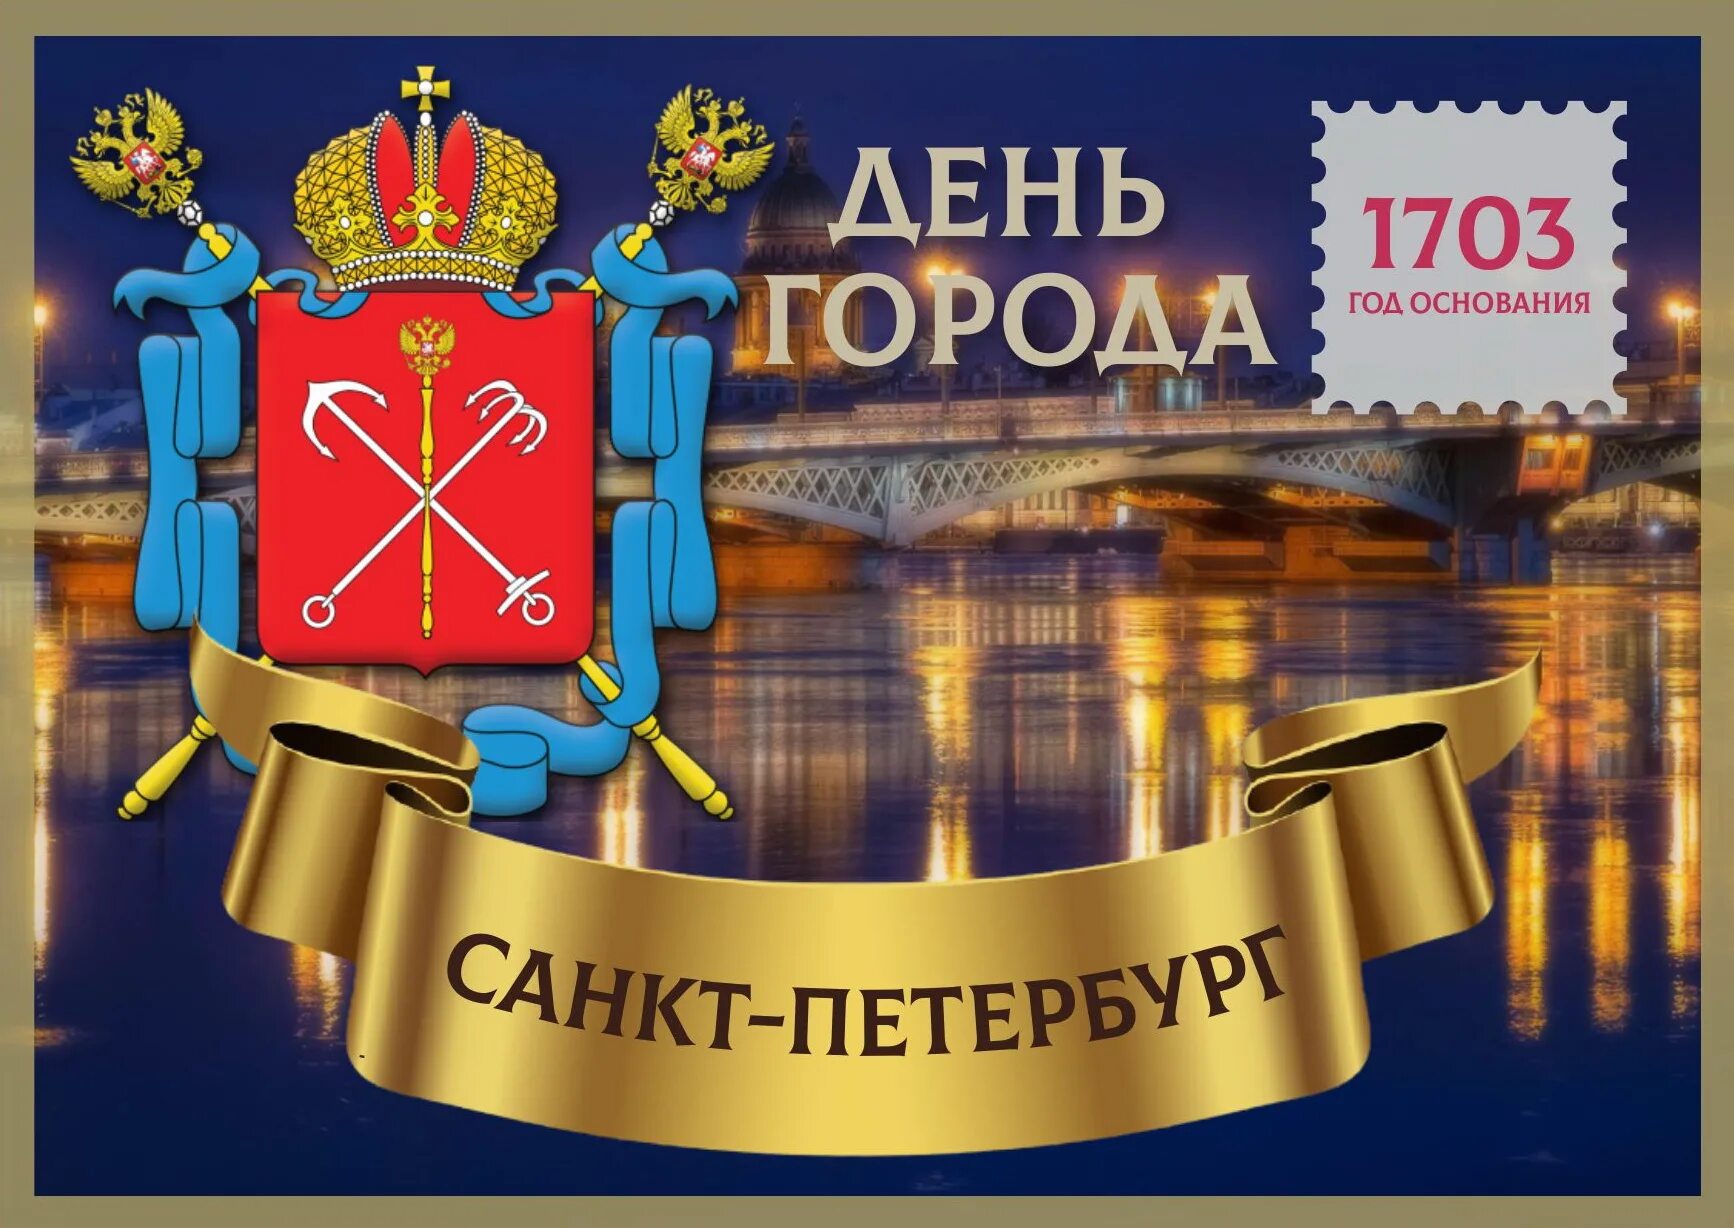 Включи город 320. Санкт-Петербург днем. Поздравление с днем города СПБ. День города Санкт-Петербурга. С днем города Санкт-Петербург открытки.